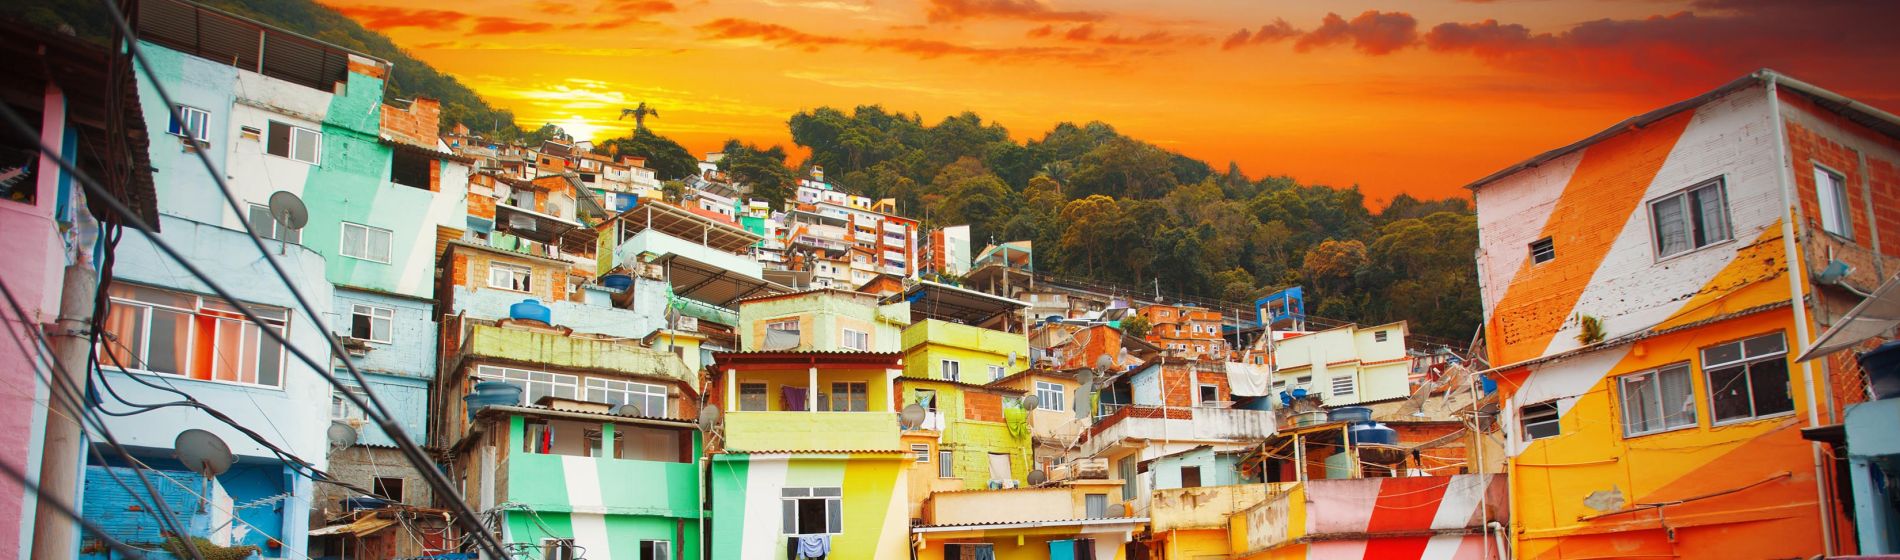 rio_de_janeiro_innenstadt_und_favela._brasilien.jpg